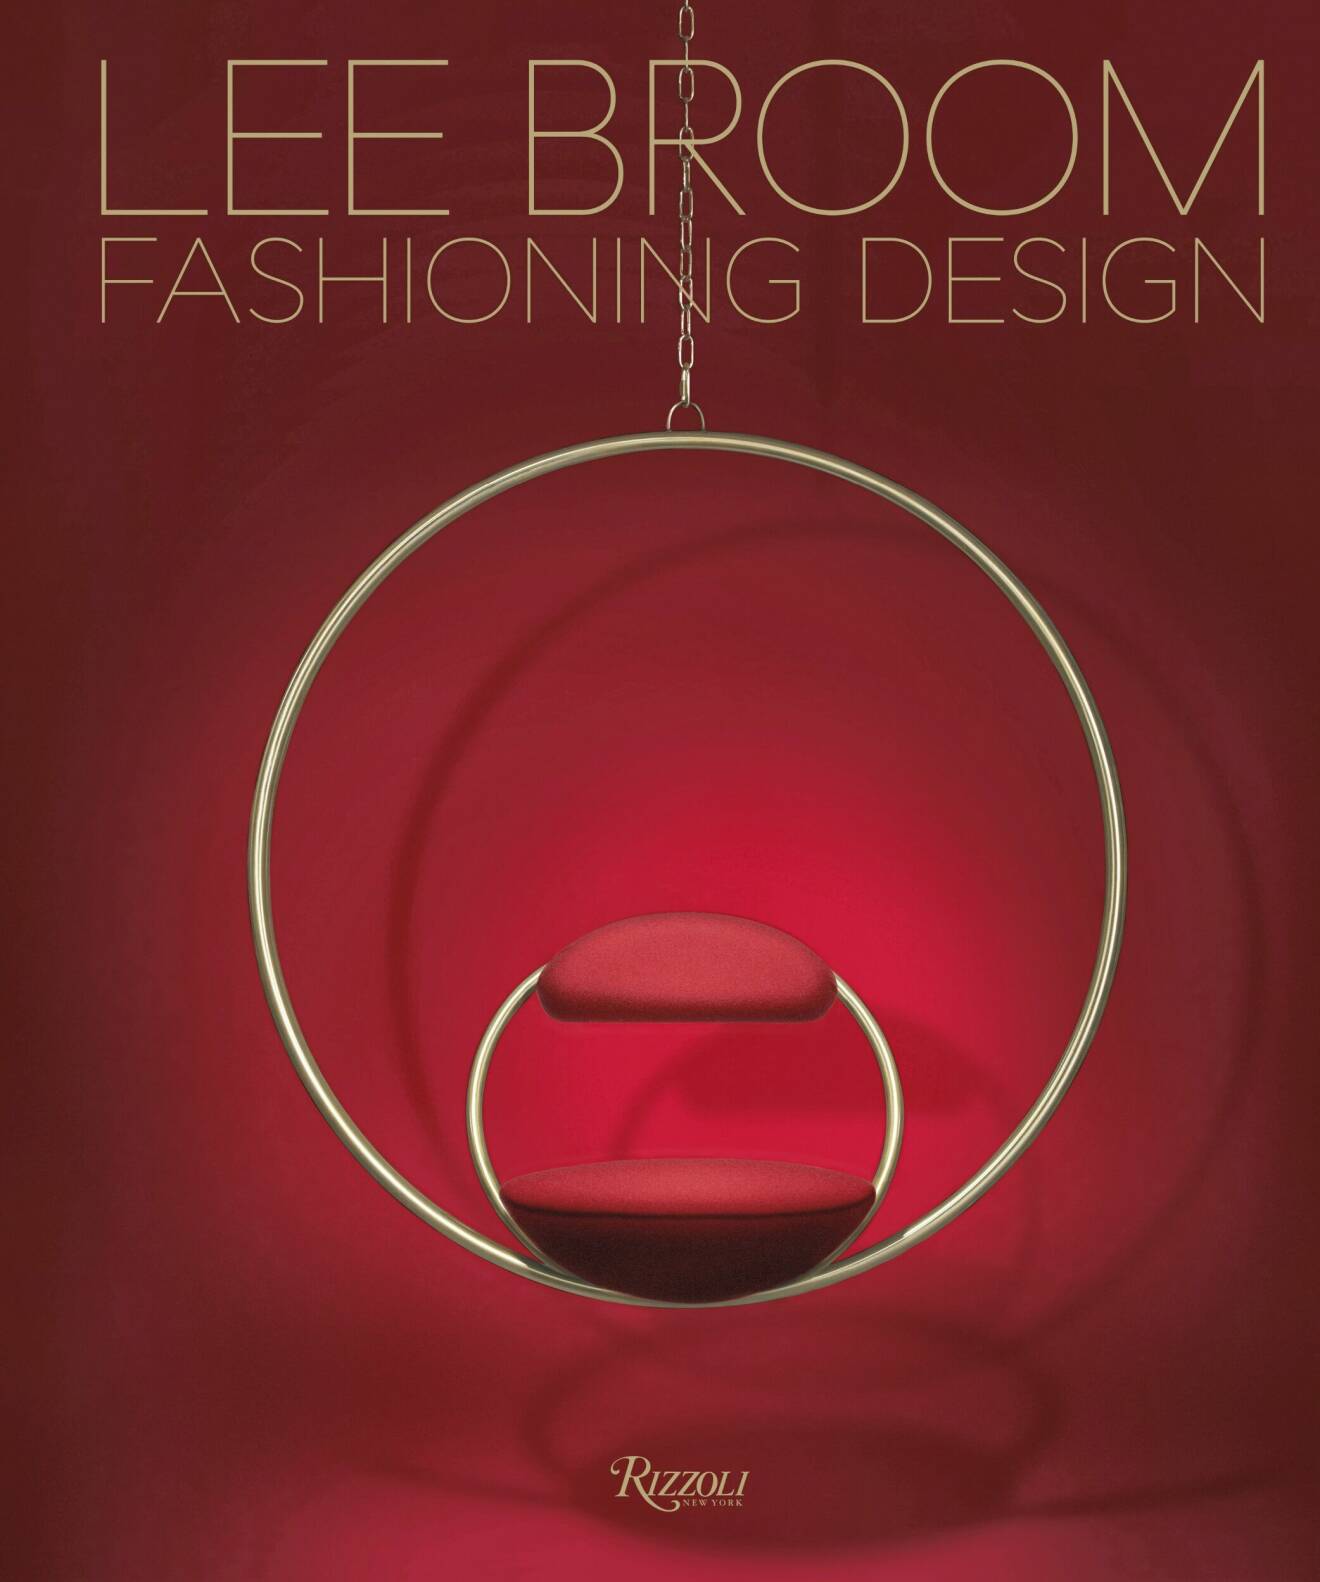 Lee Broom bok